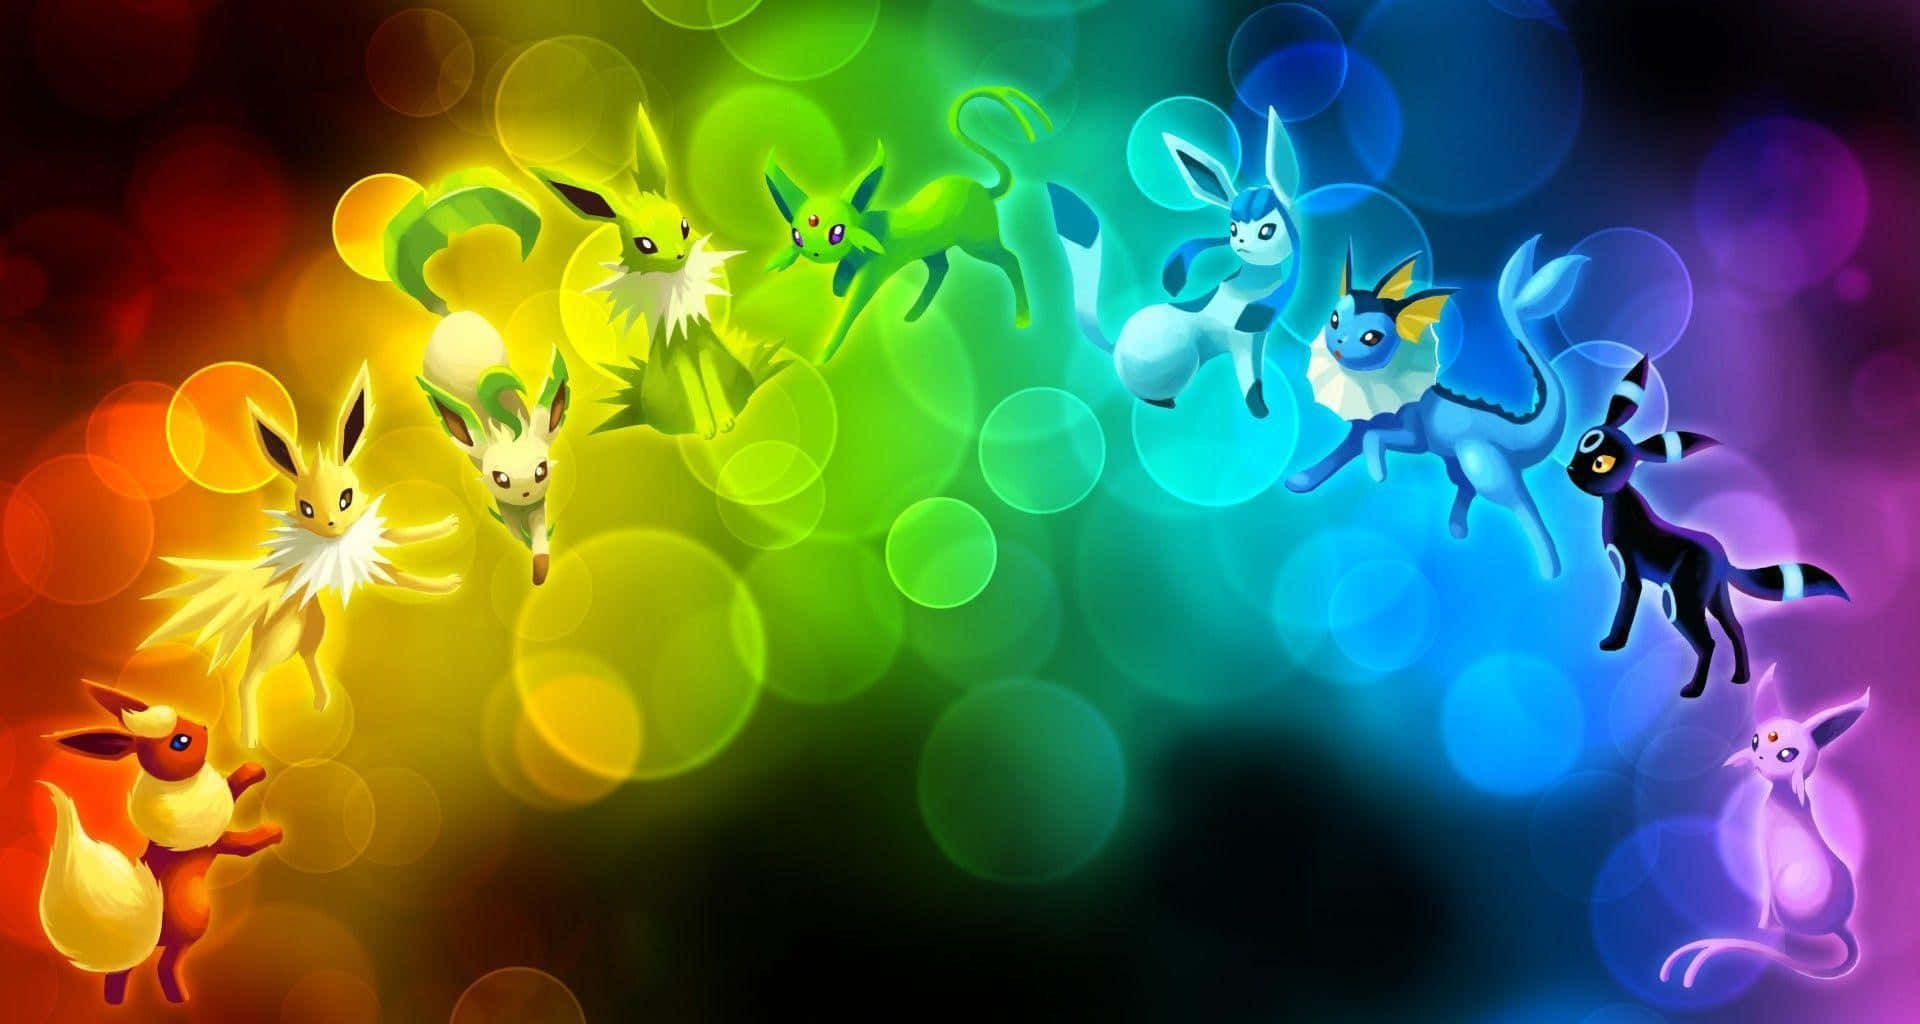 Pokemonbakgrundsbilder I Hd - Hd-bakgrundsbilder. Wallpaper